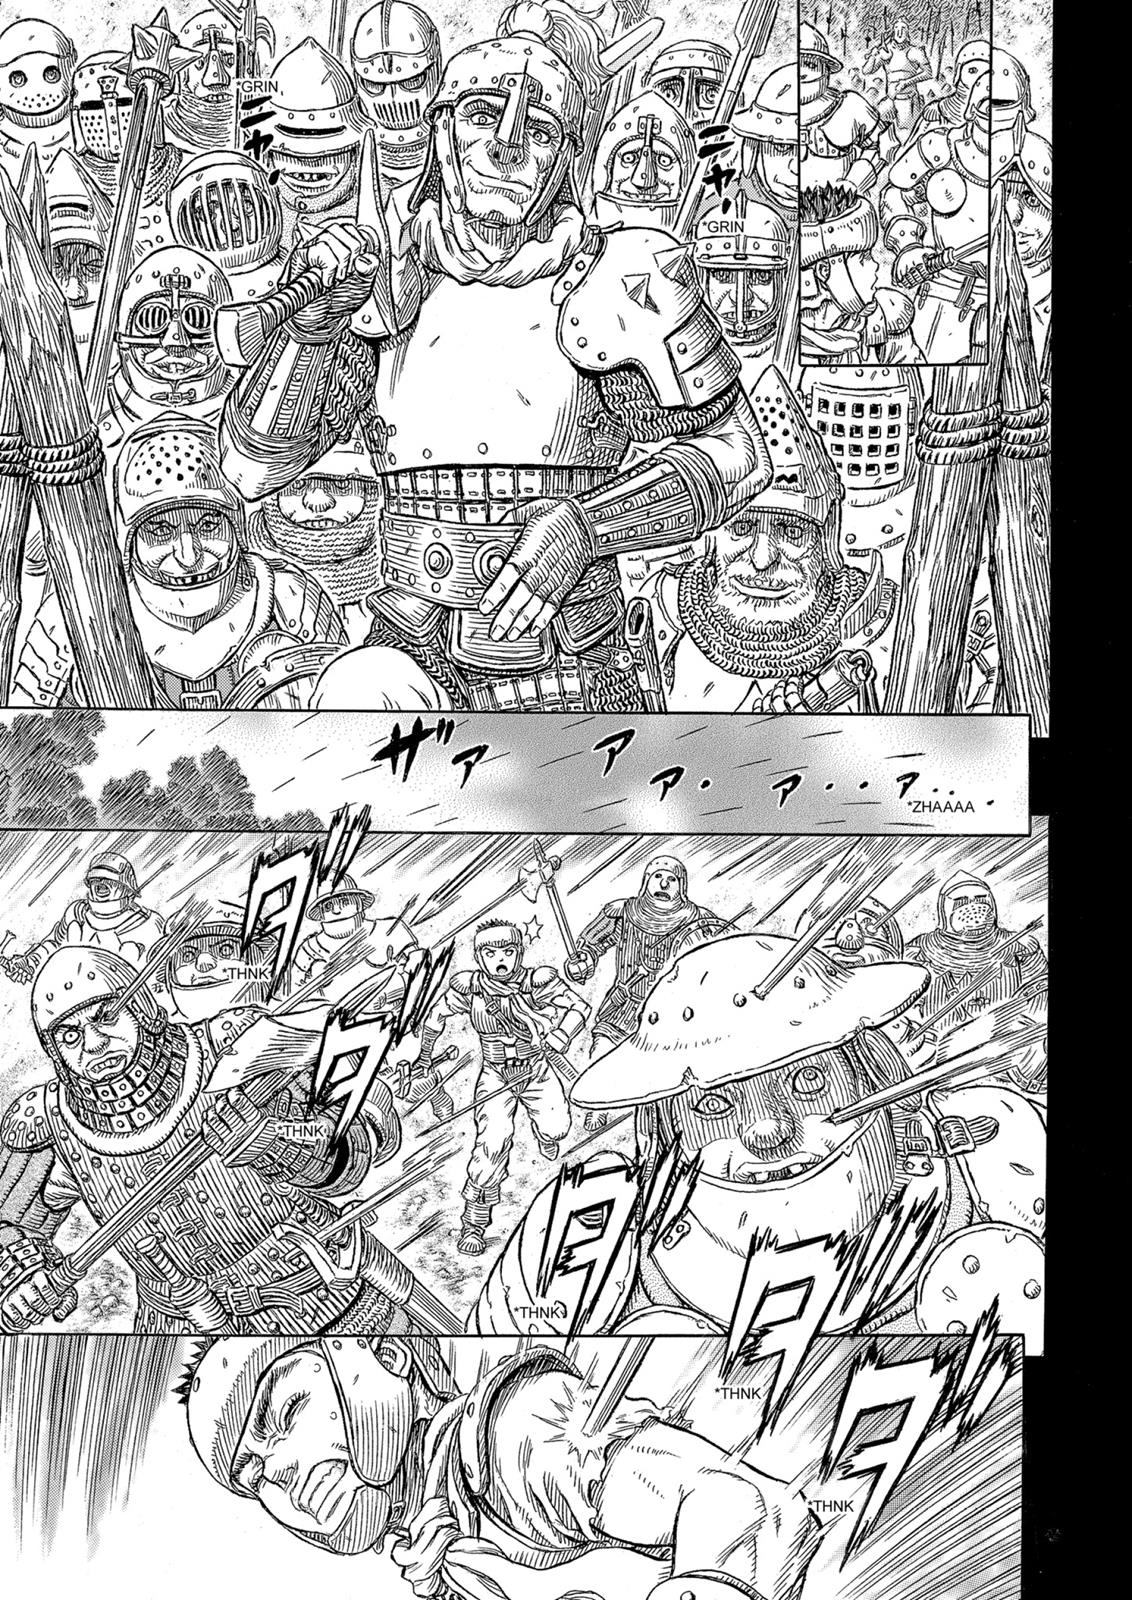 Berserk Manga Chapter 329 image 16